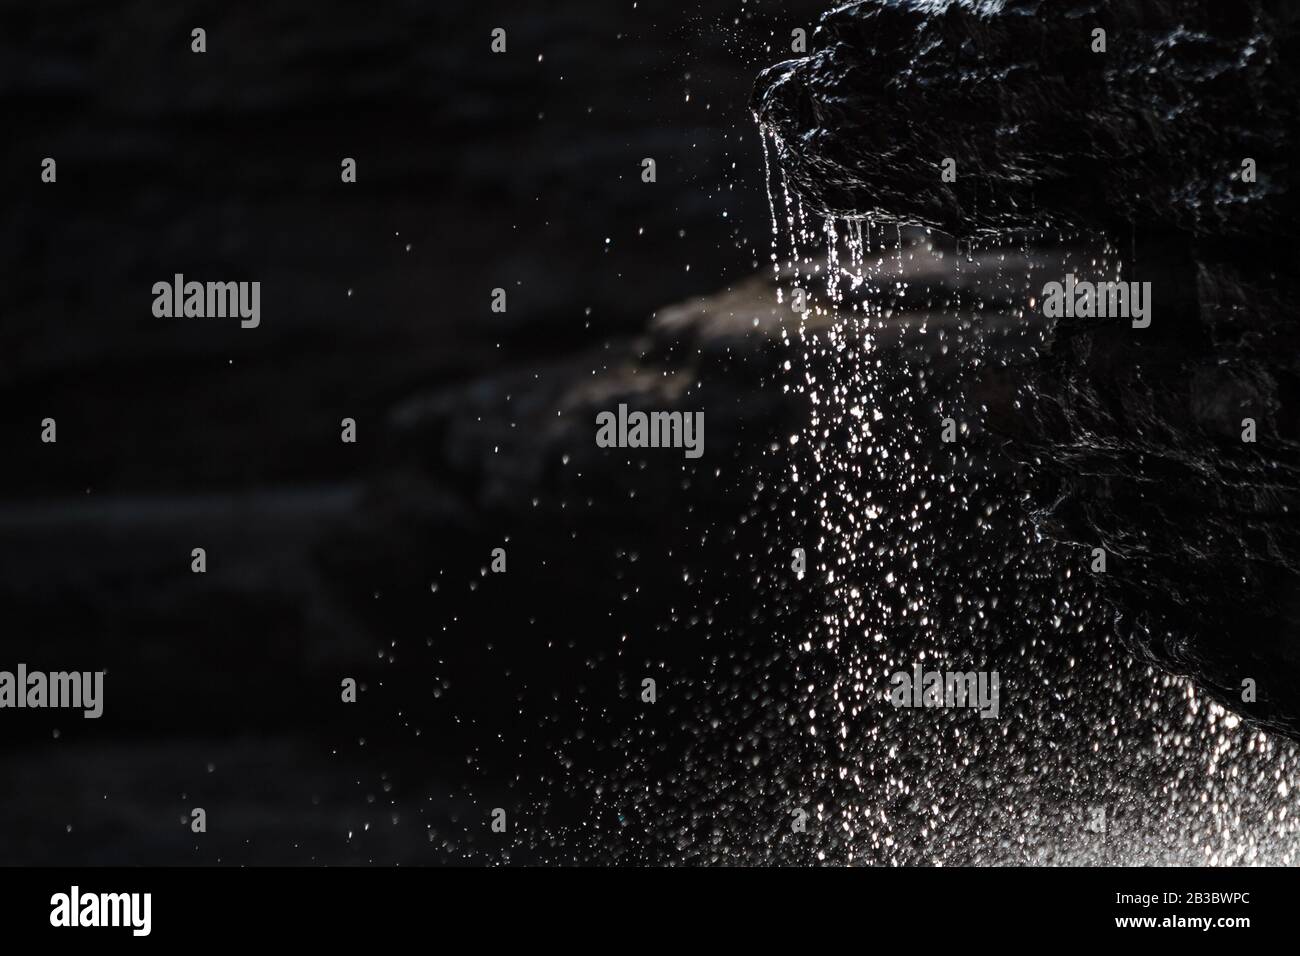 Imagen congelada de gotas de agua de la piedra (piedra caliza) en la garganta de St Alban Sainte Anne Canyon, Qc. Canadá Foto de stock